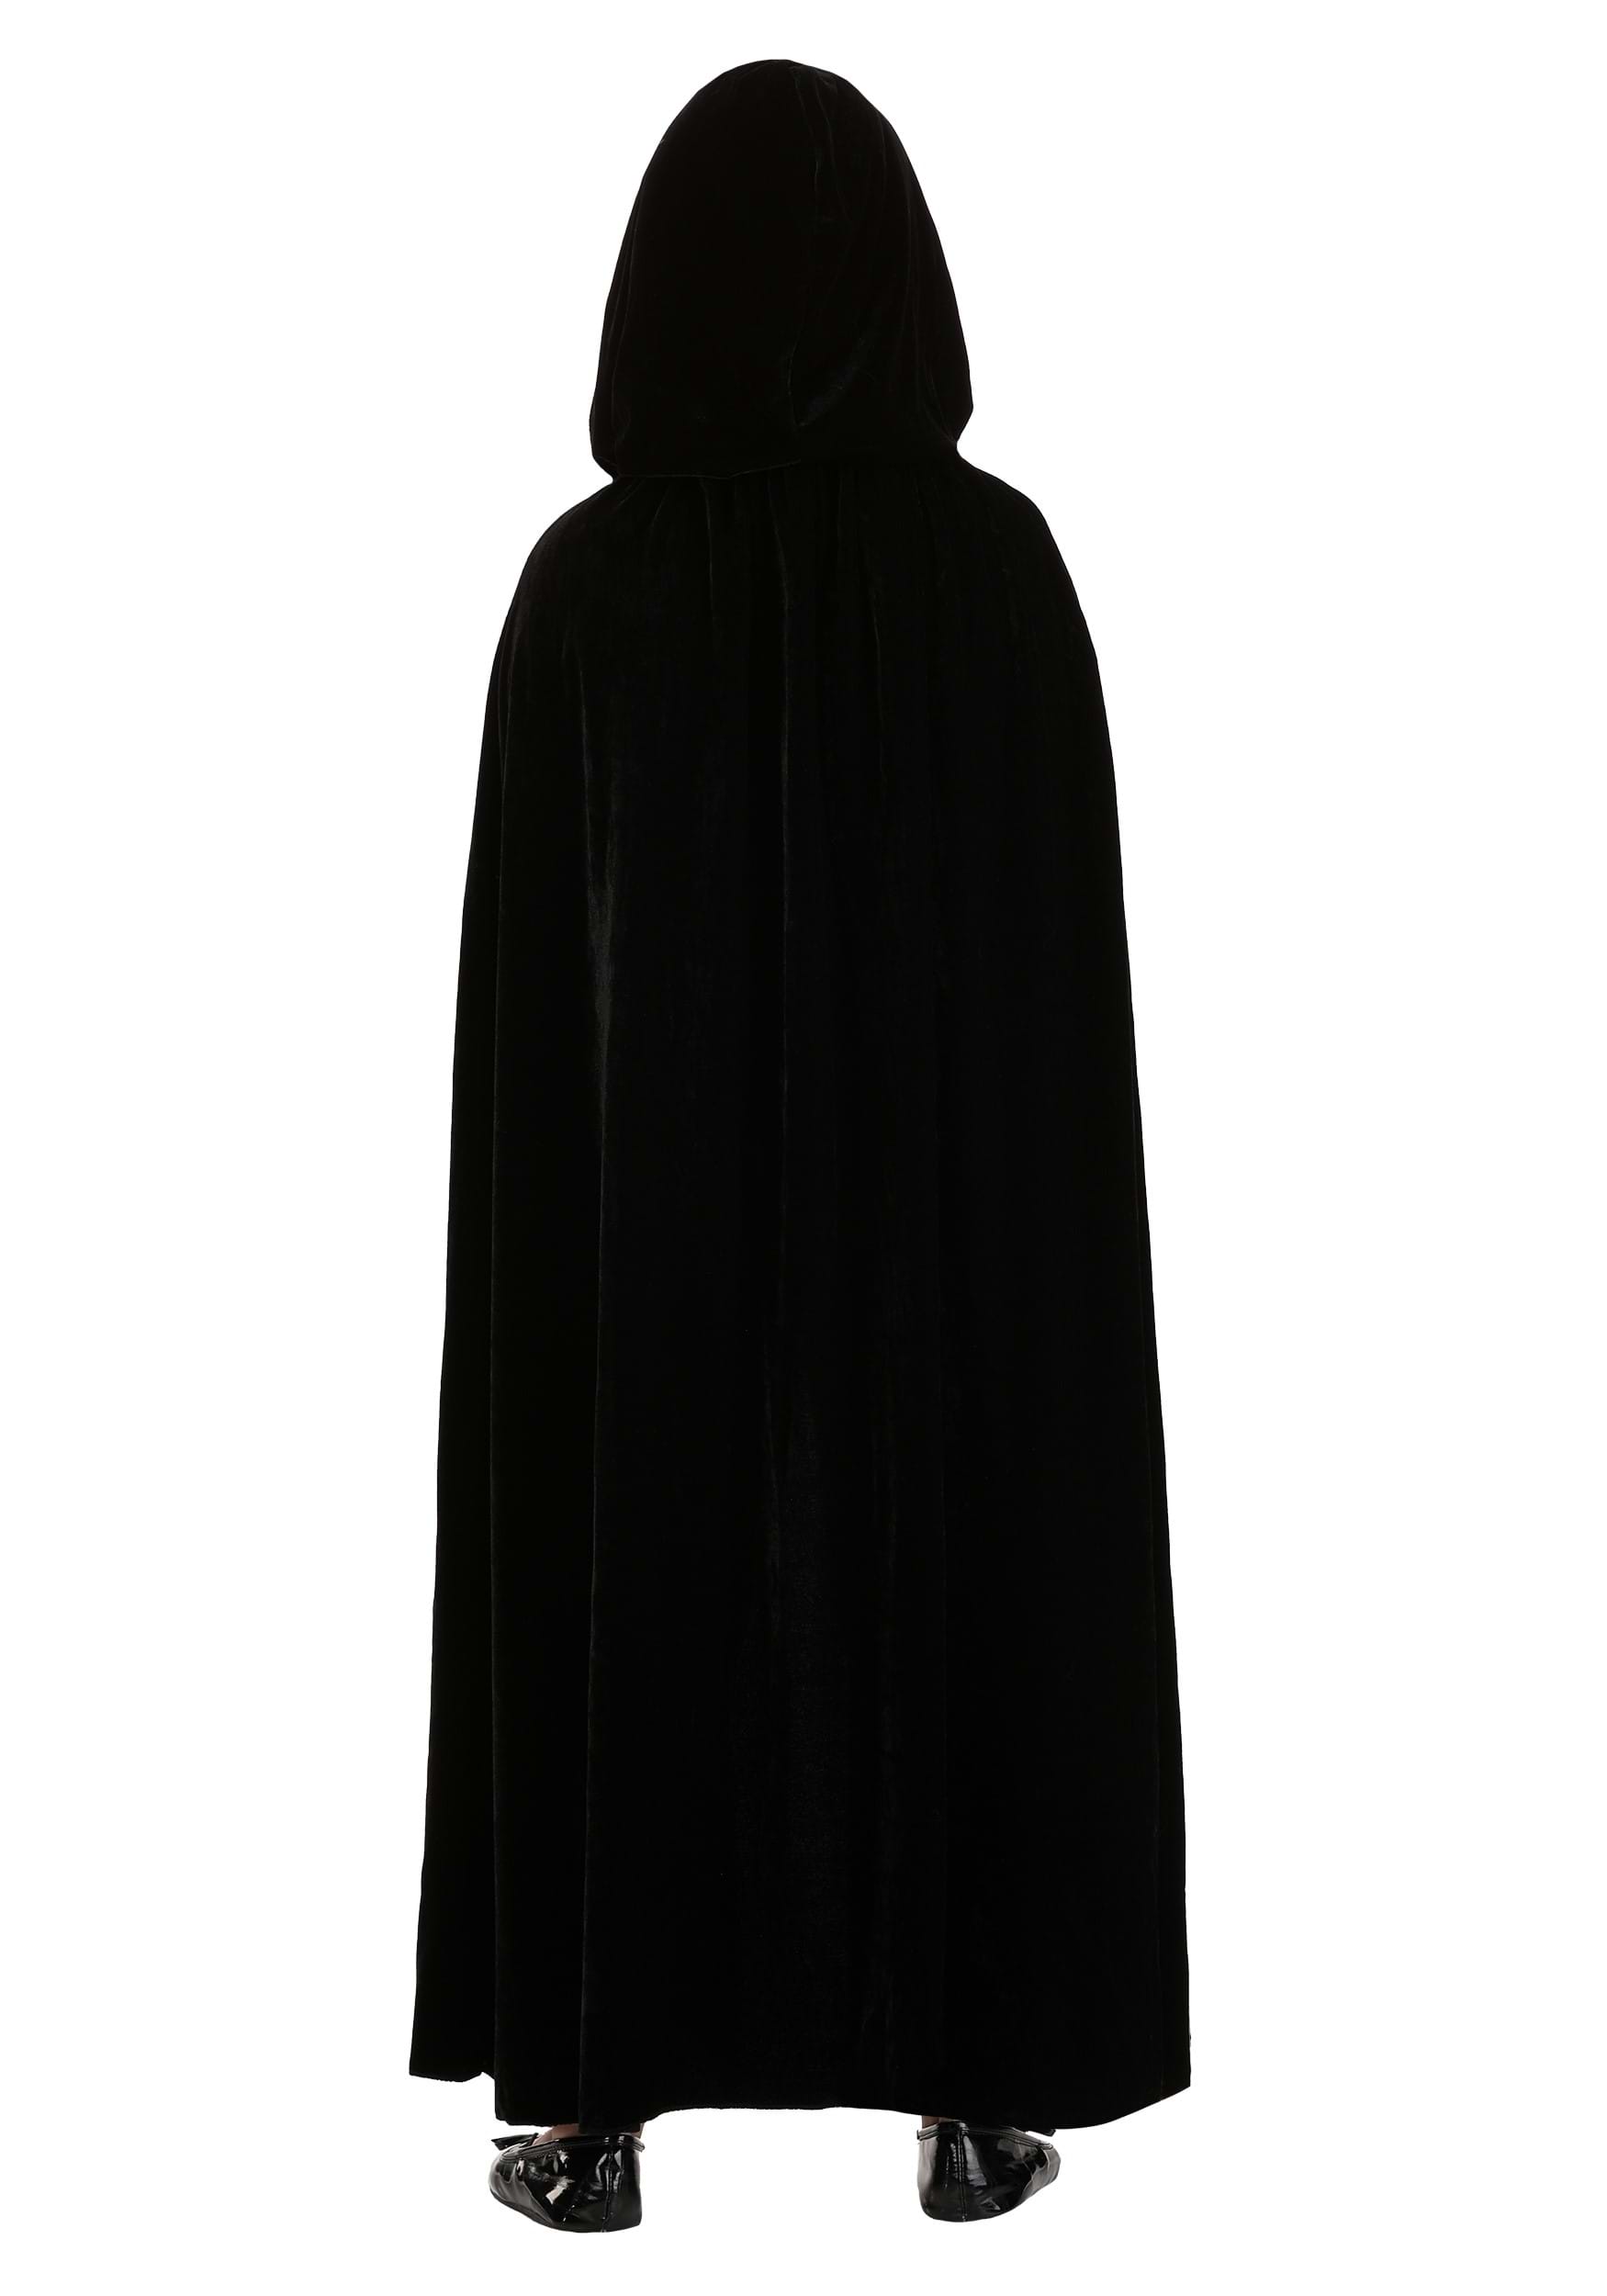 Black Velvet Hooded Kid's Cape | Costume Capes